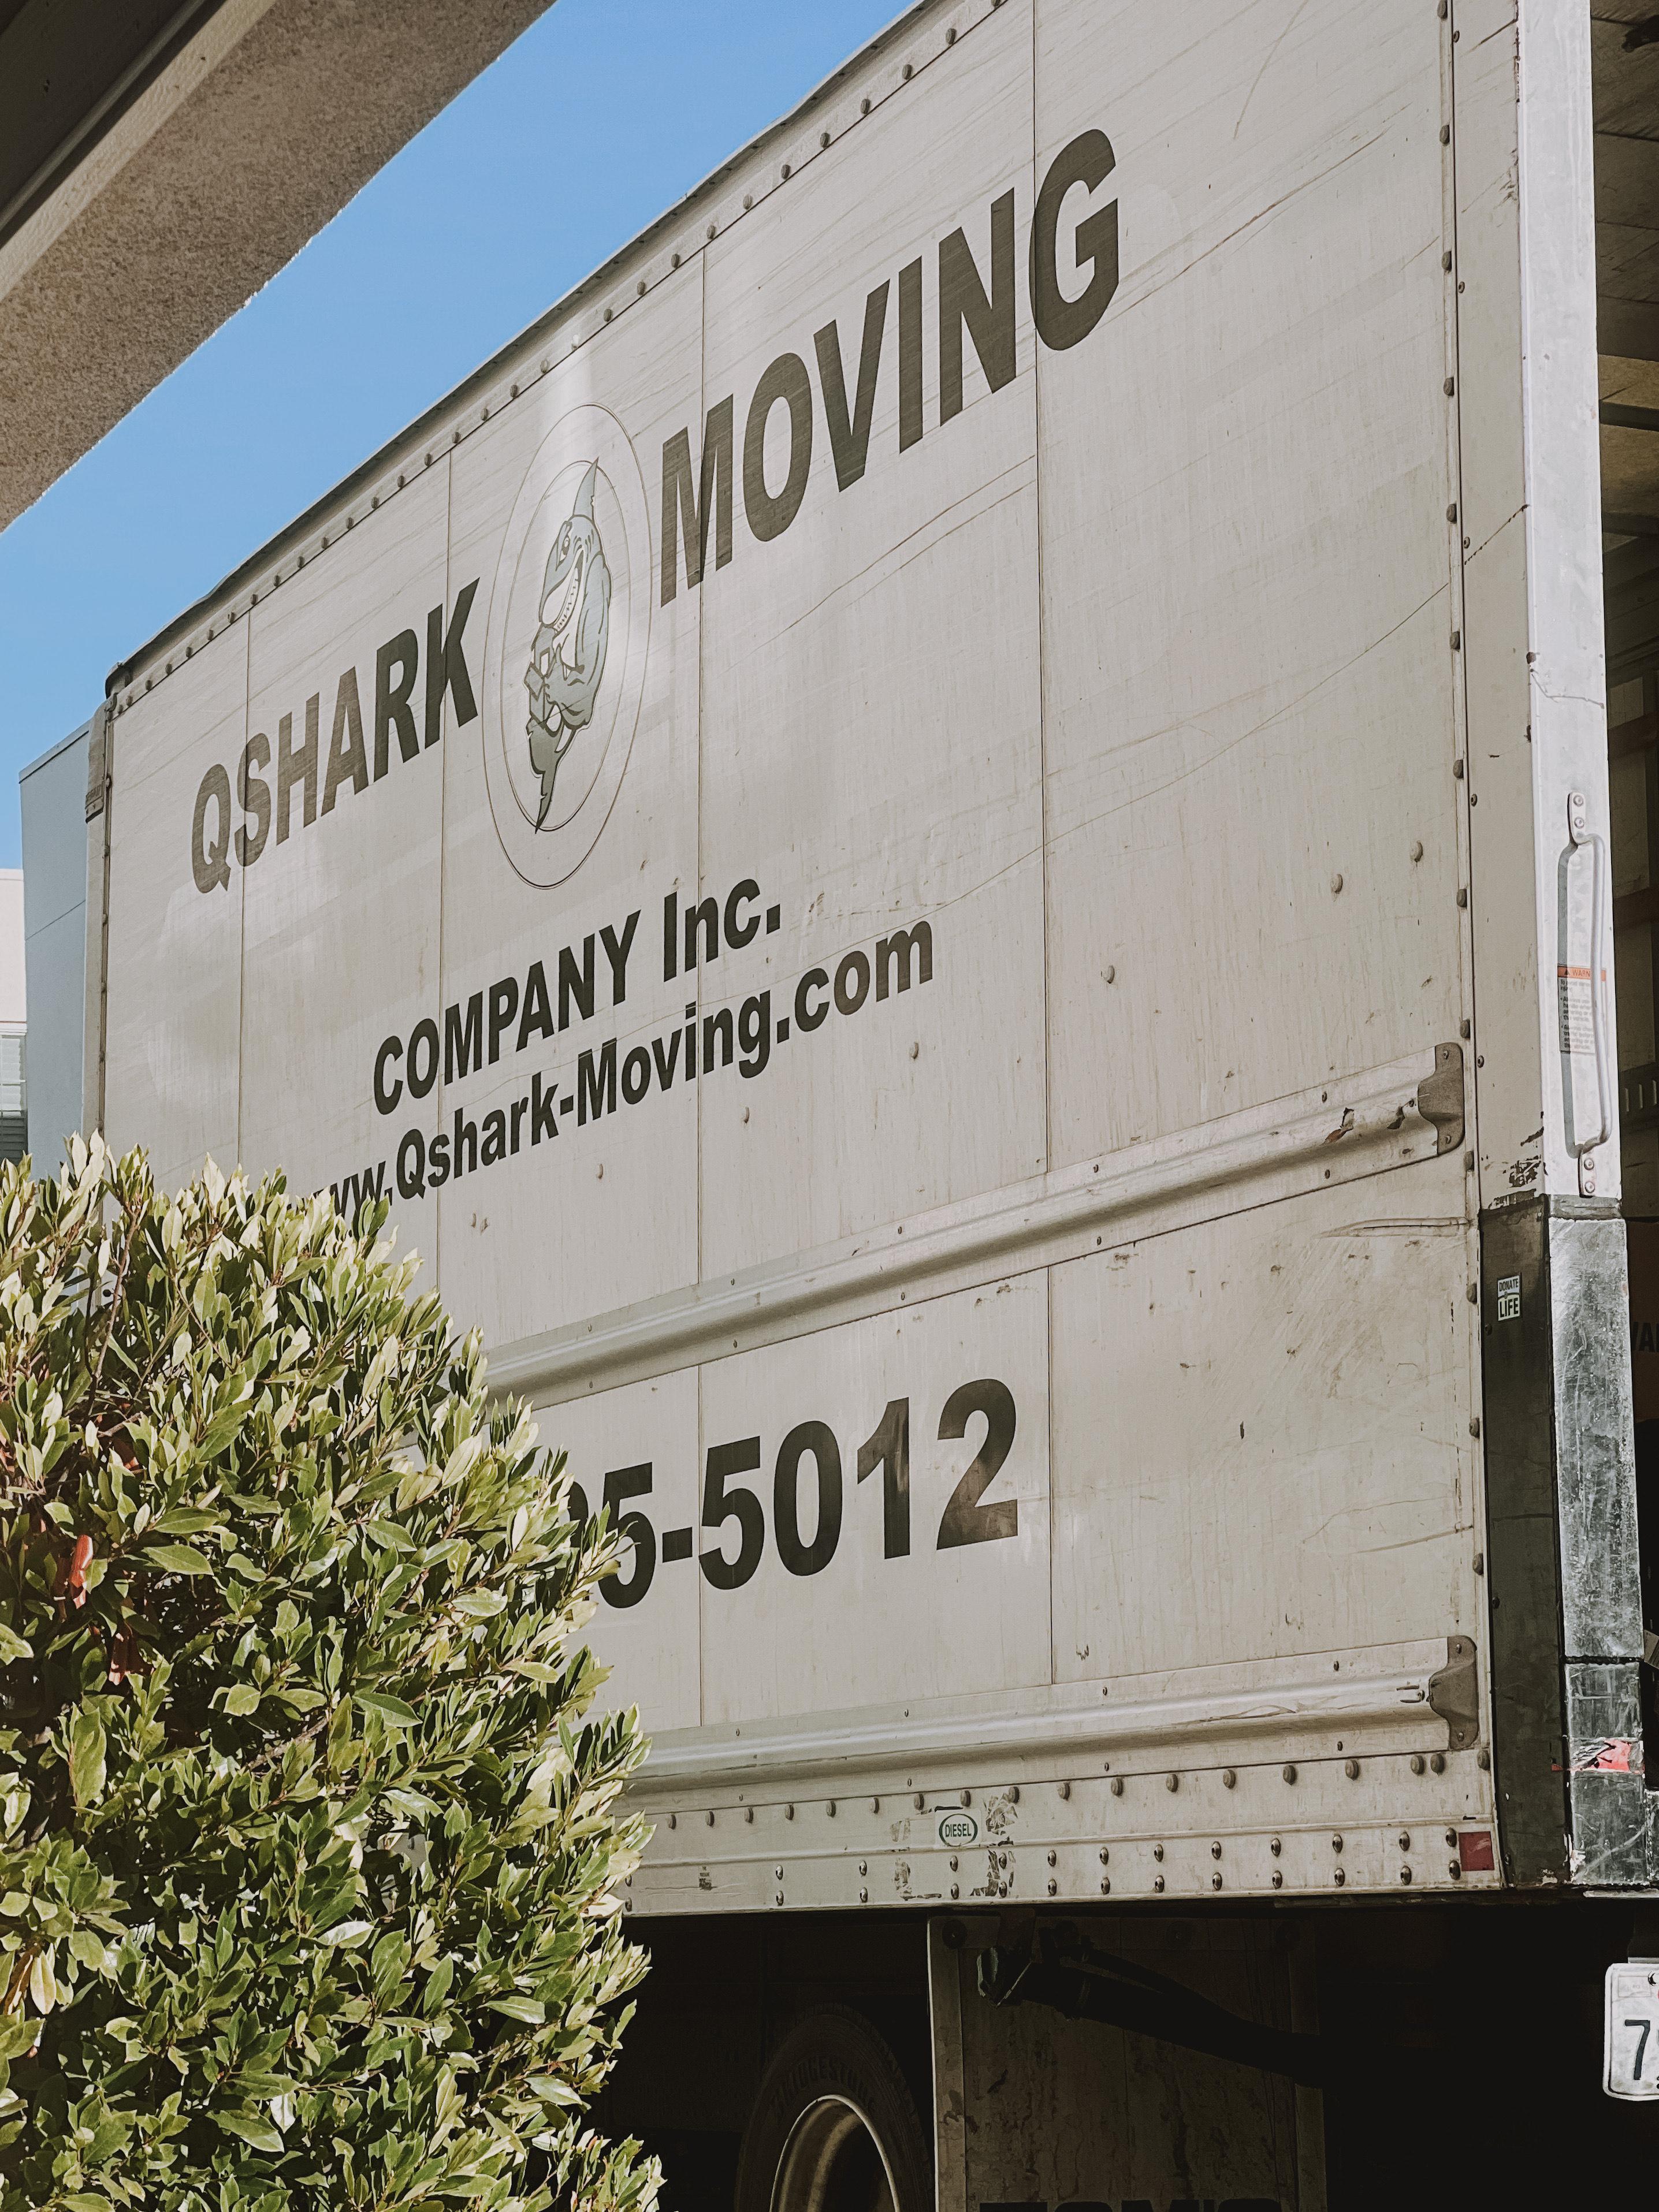 Qshark Moving Company